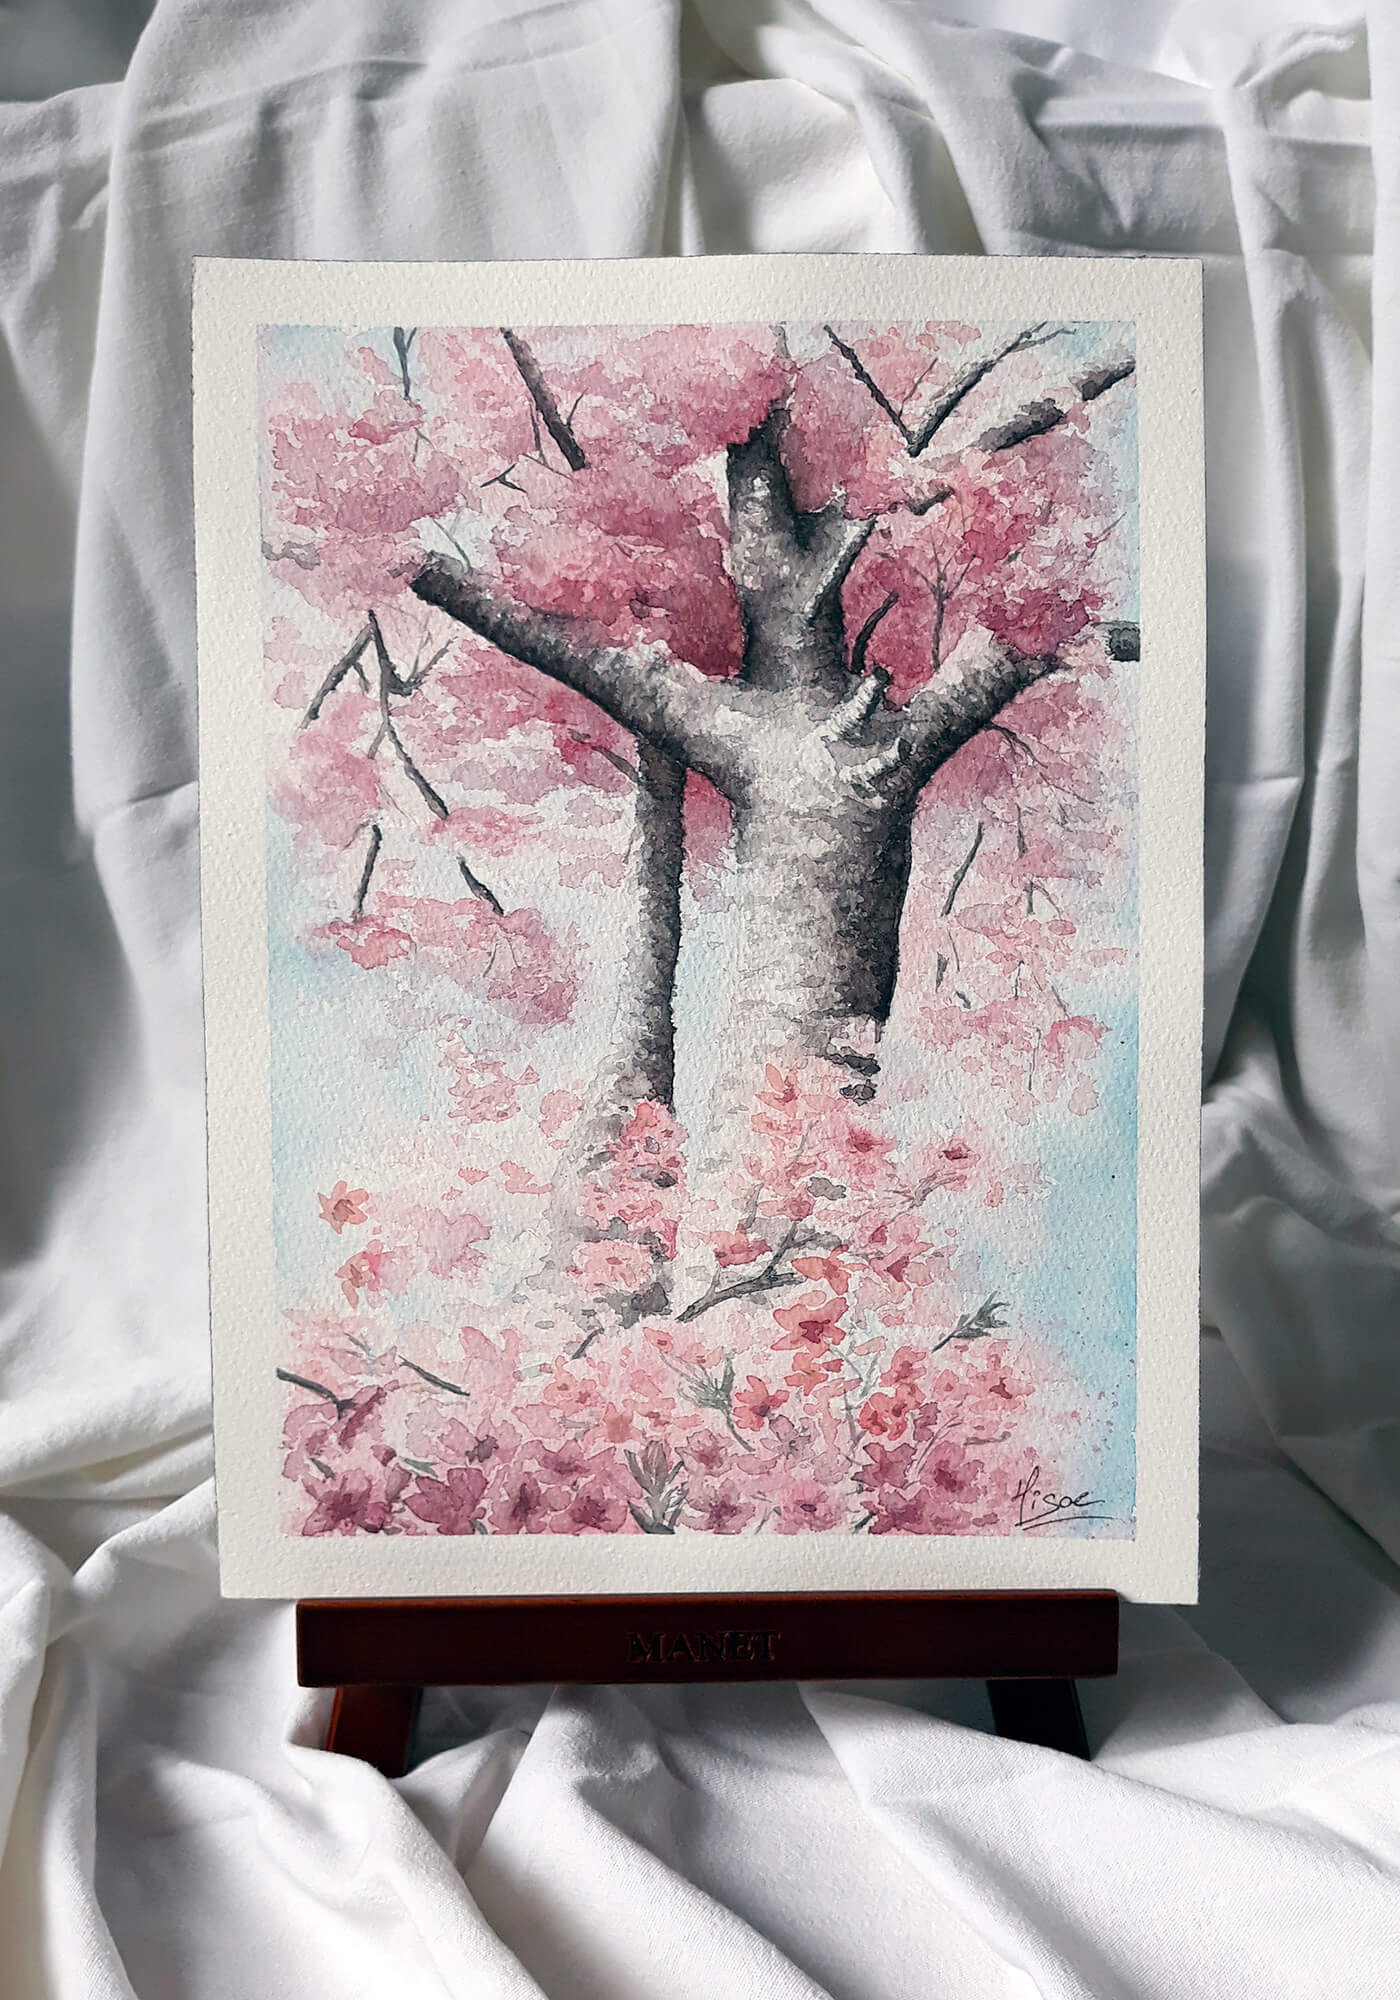 Aquarelle originale sur chevalet représentant un sakura, cerisier japonais en fleurs ©Hisae illustrations